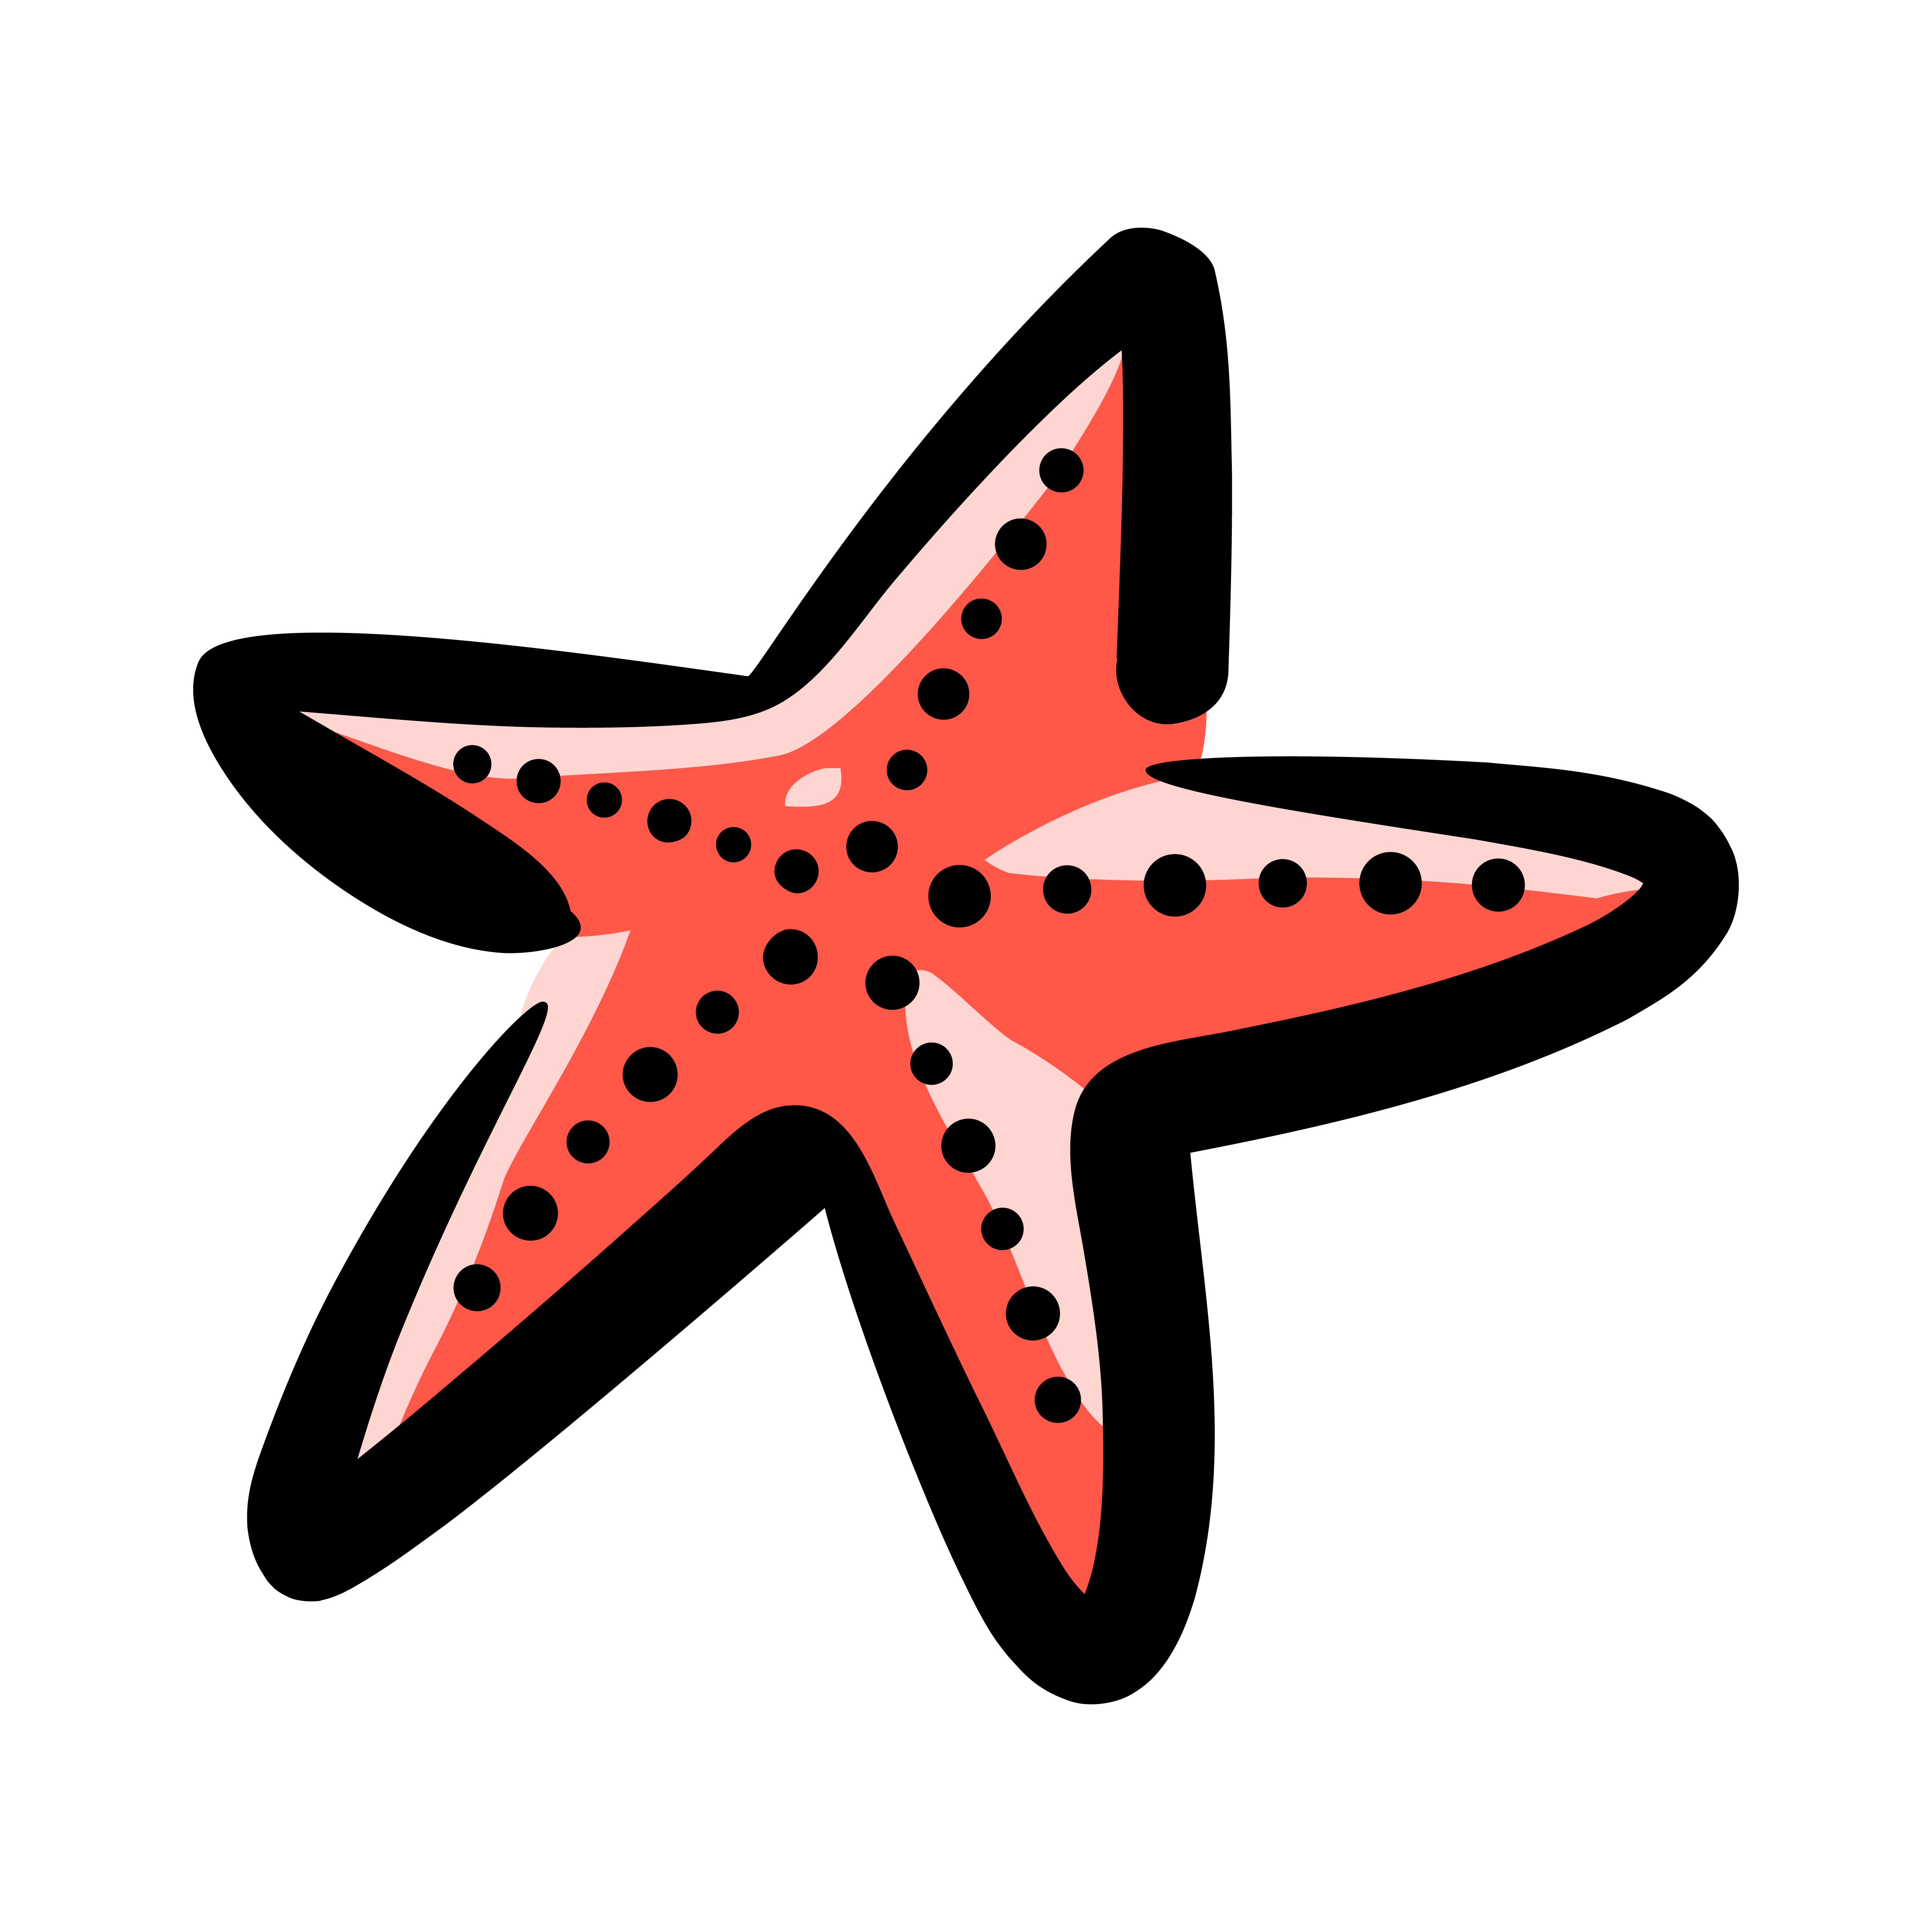 Starfish sea creature vector icon 546223 - Download Free ...